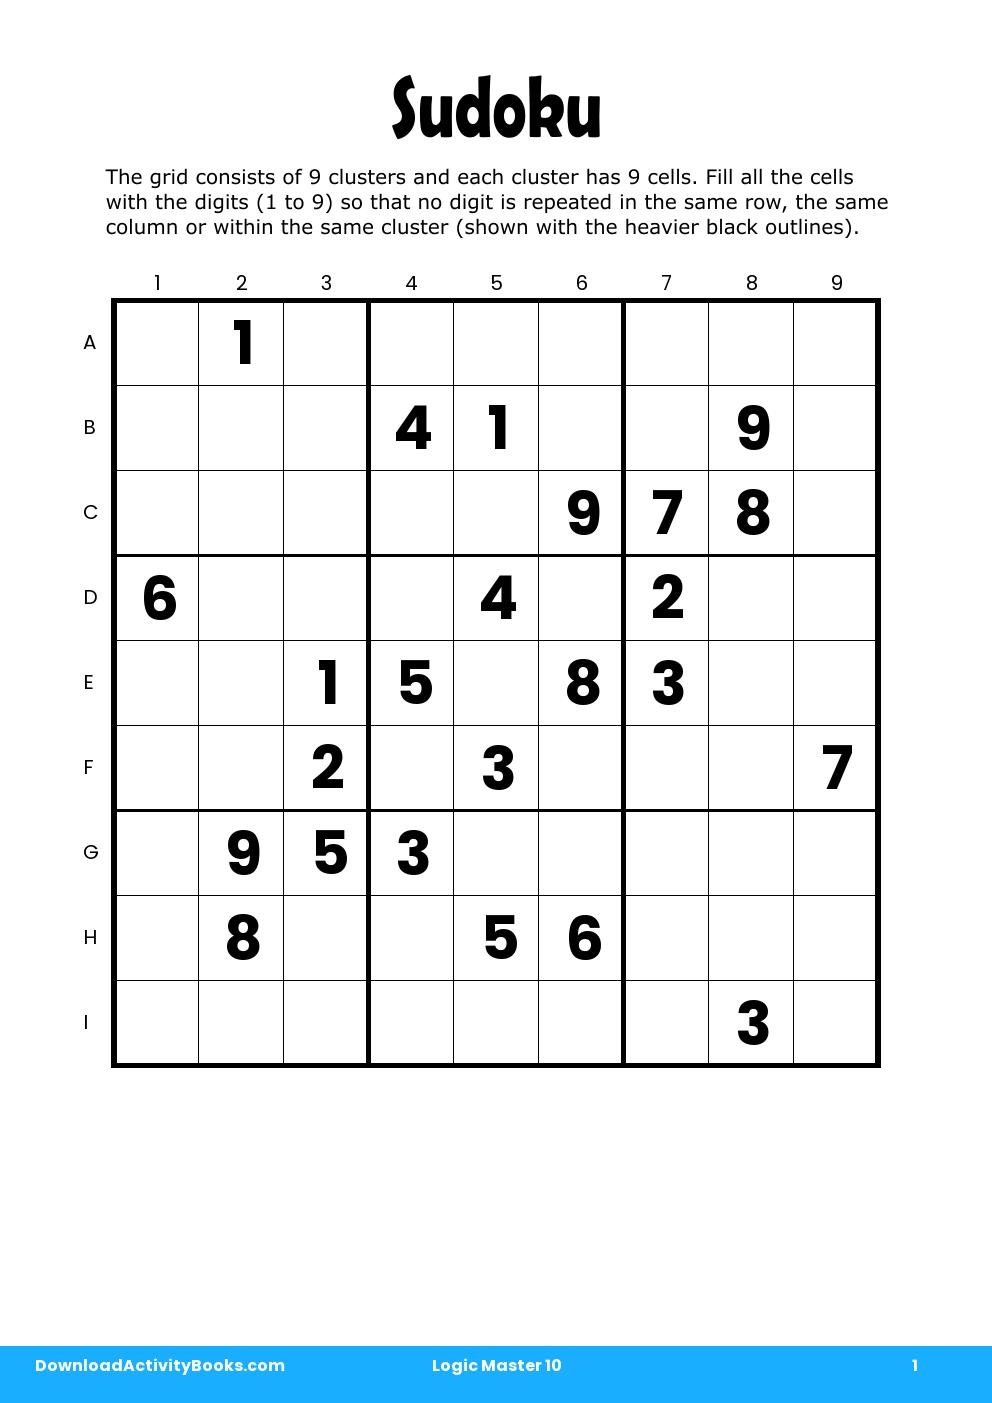 Sudoku in Logic Master 10